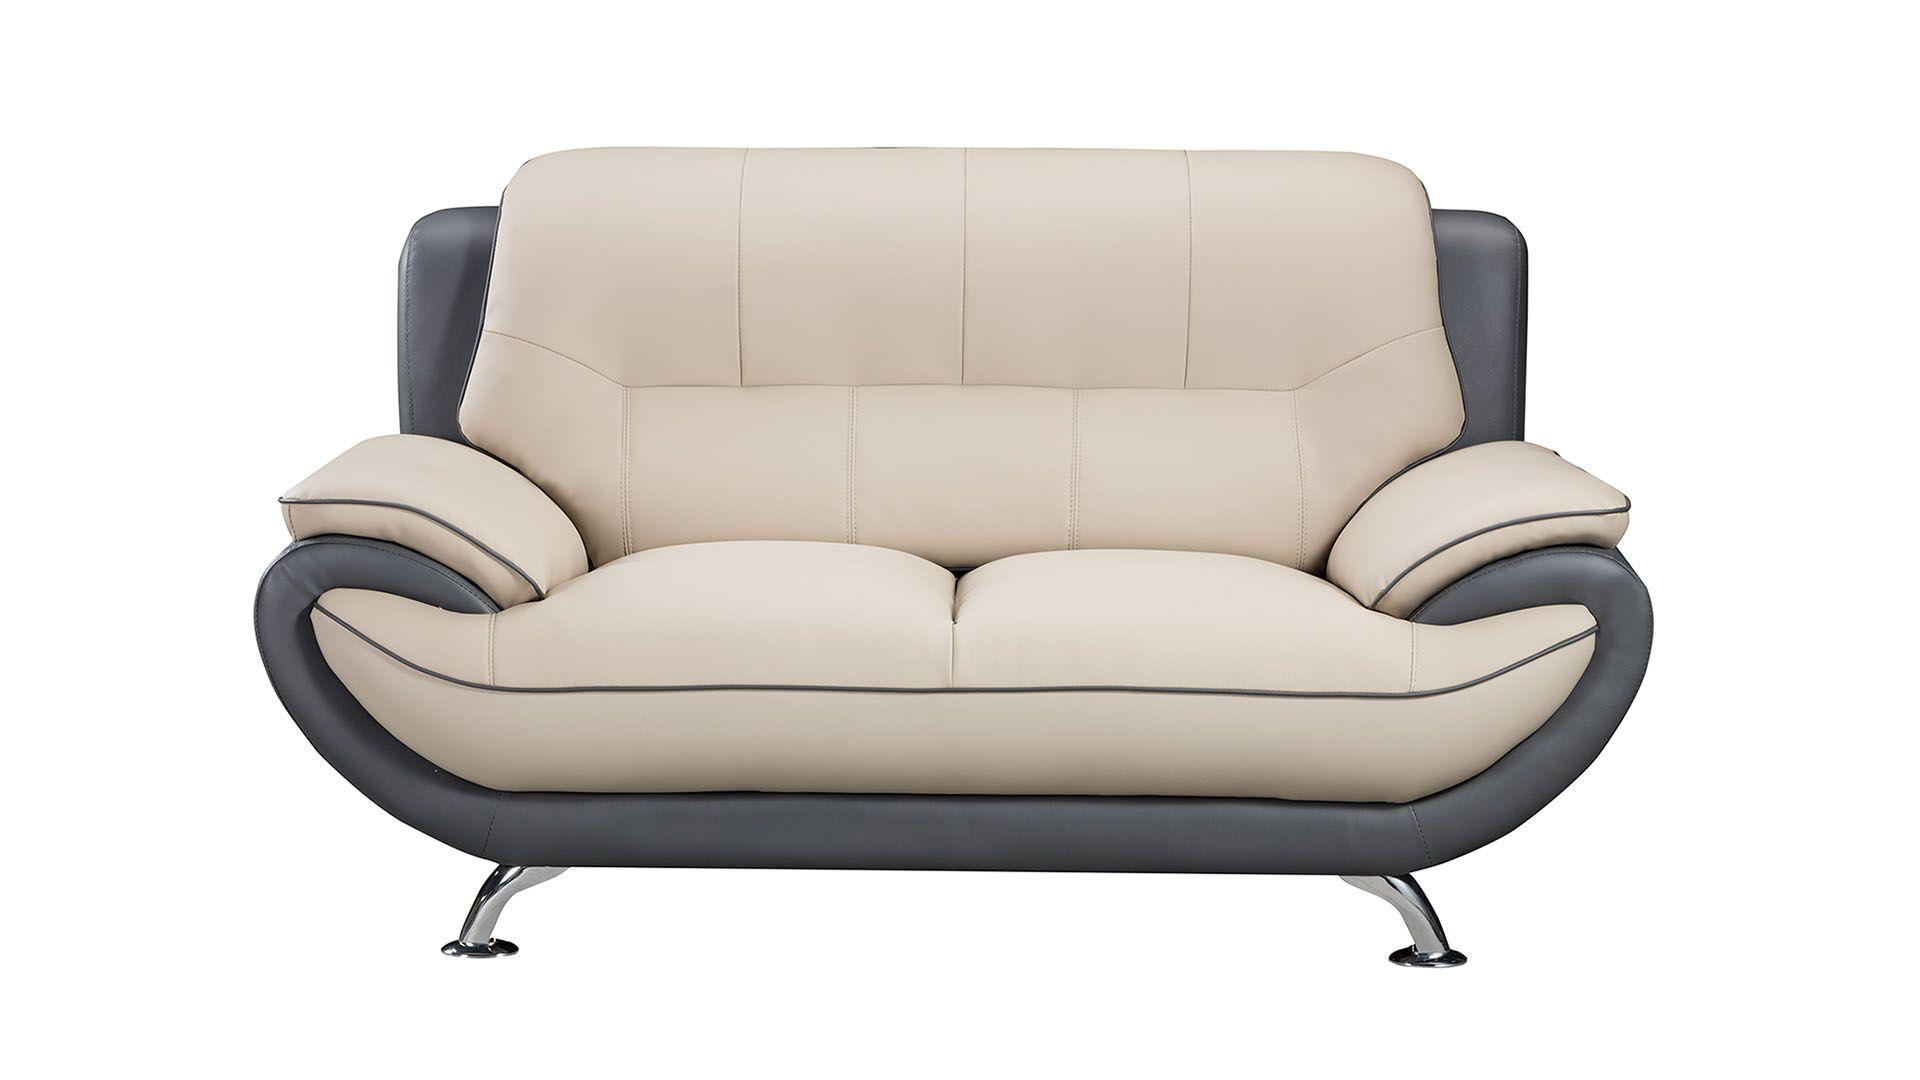 

    
American Eagle Furniture AE208-LG.DG-3PC Sofa Set Light Gray/Gray AE208-LG.DG-3PC
